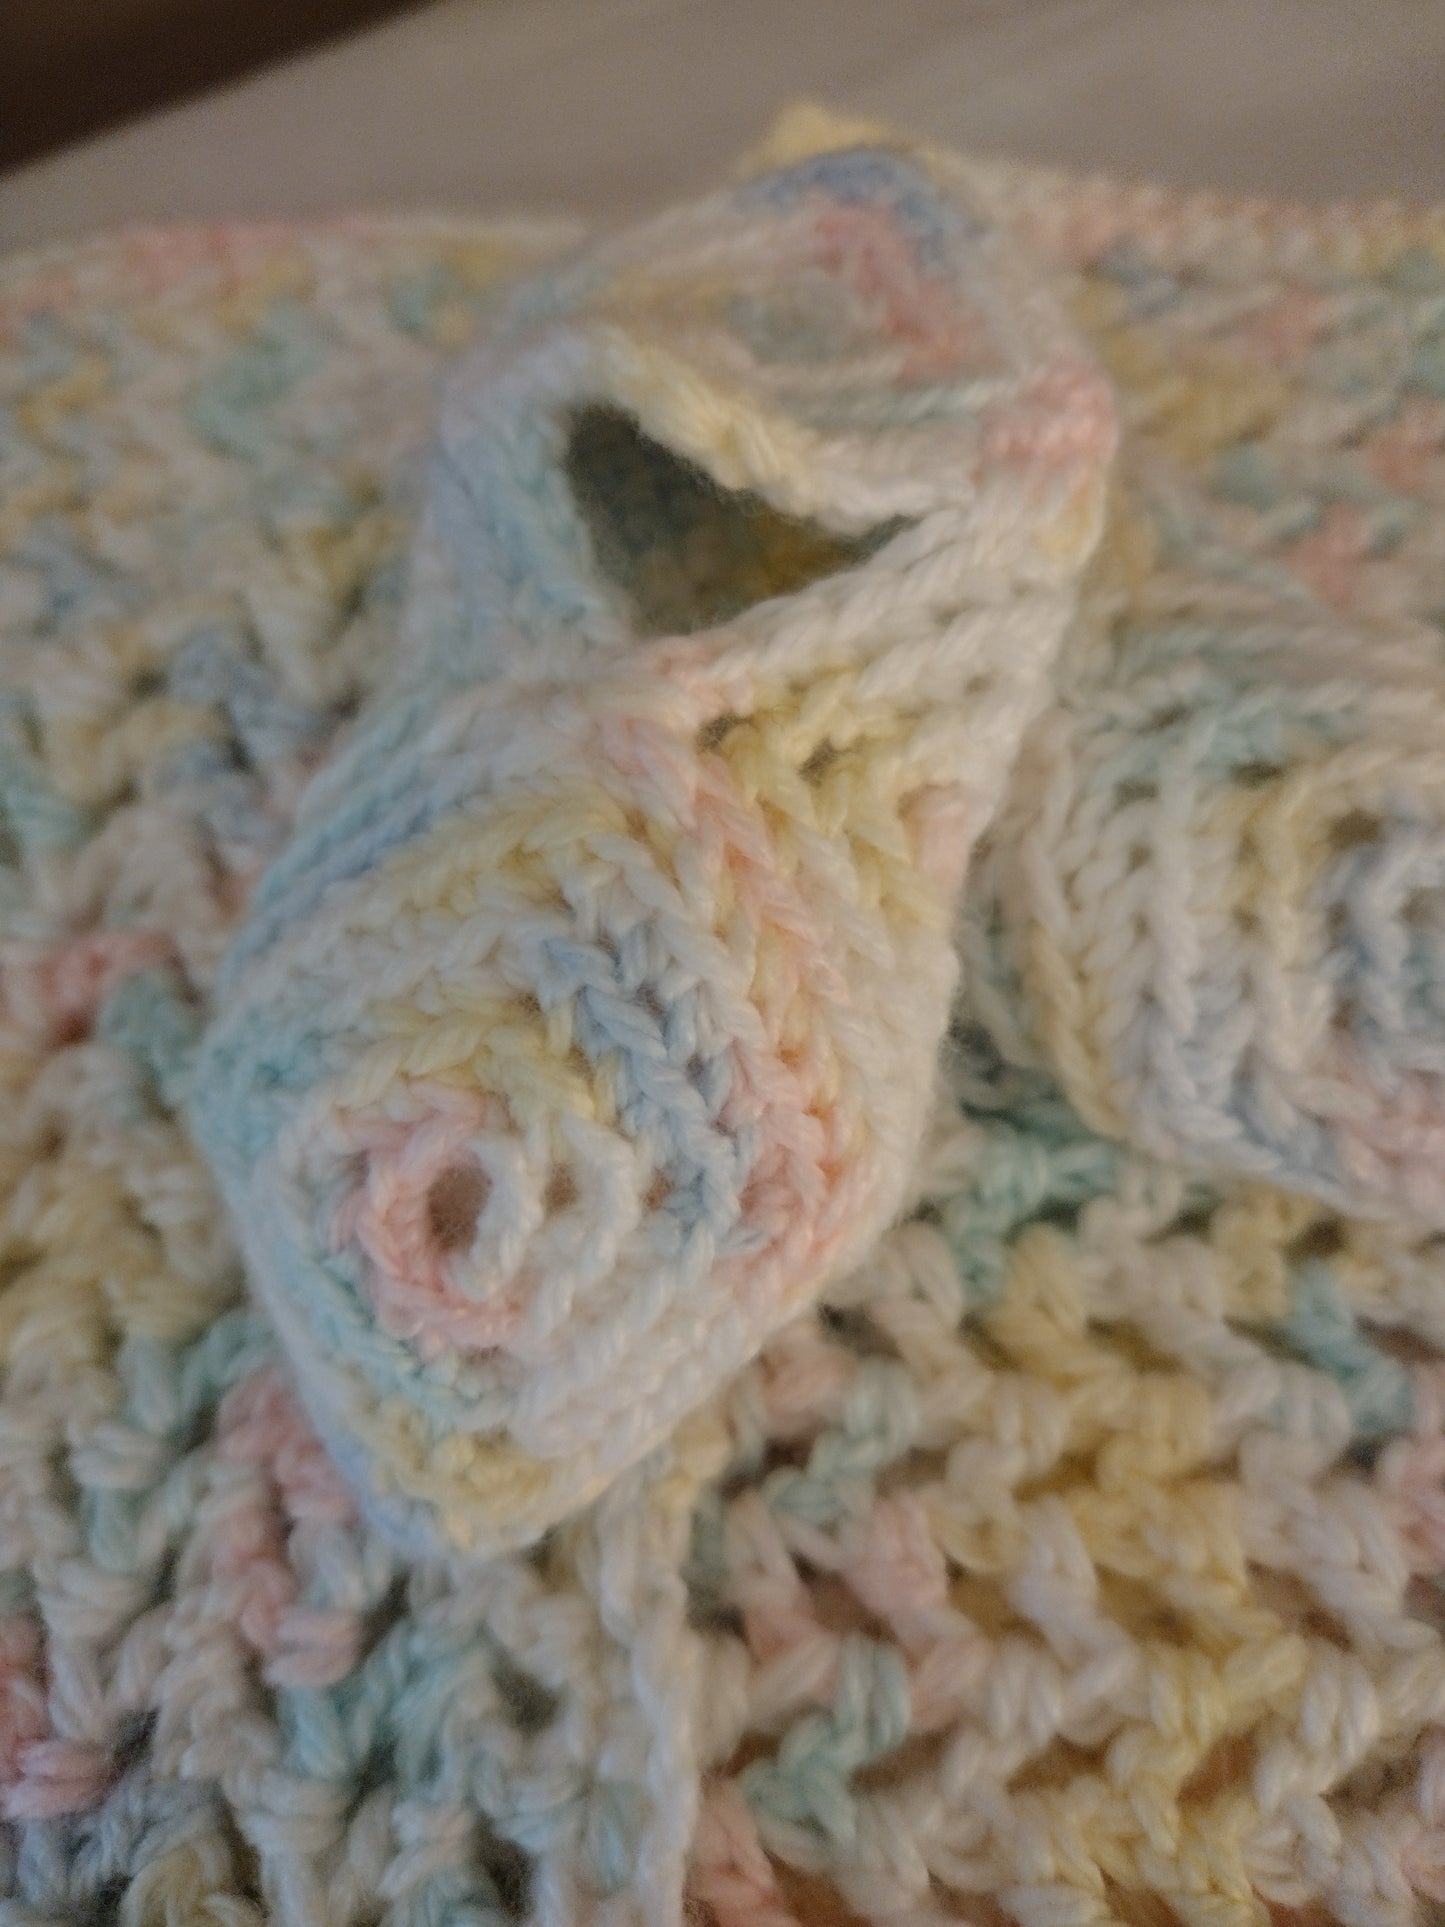 Hand Crocheted Baby Blanket + Booties